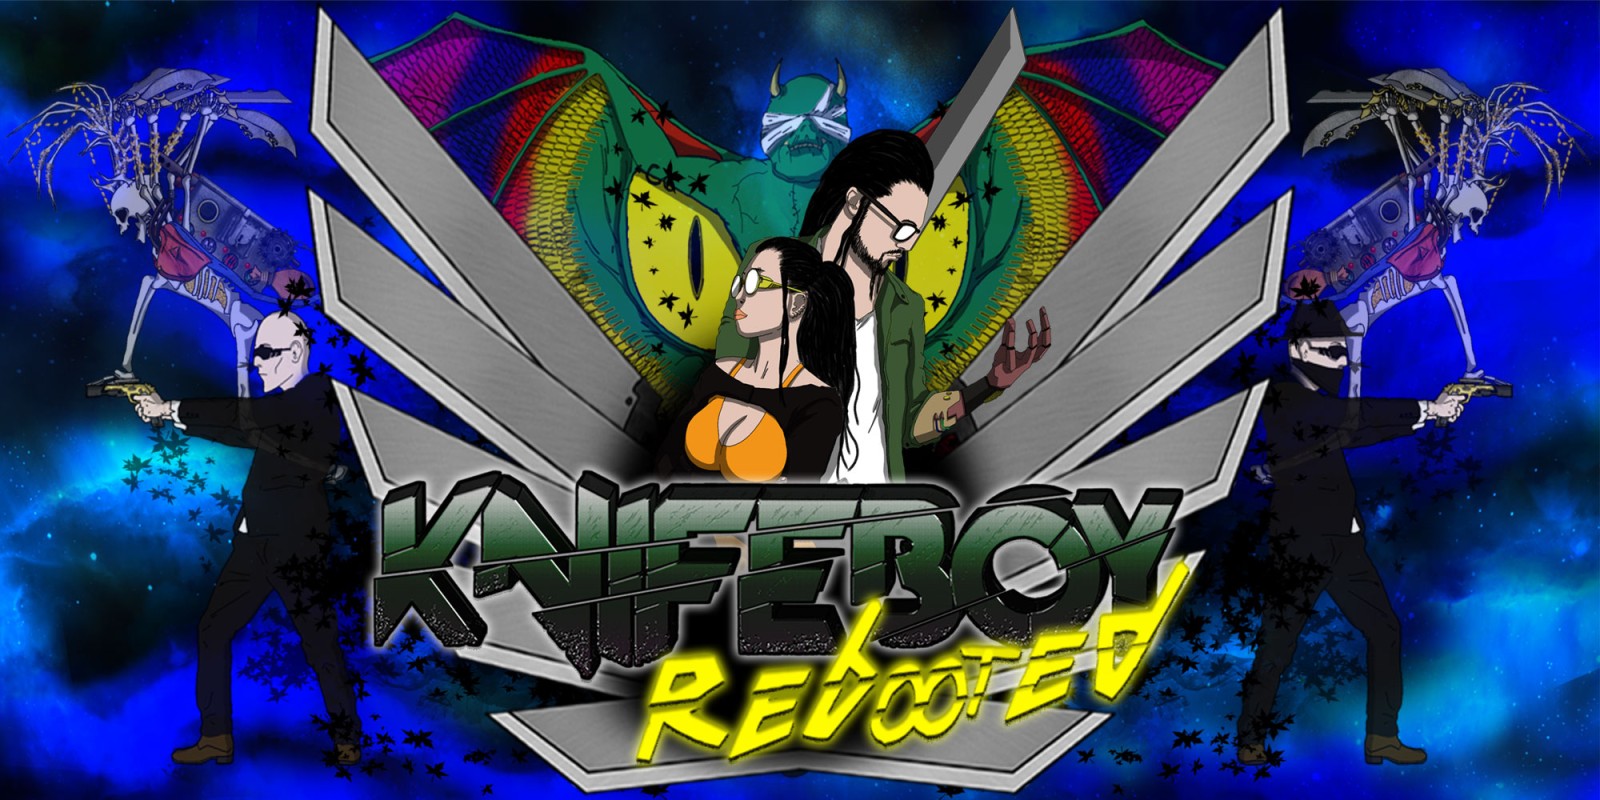 KnifeBoy Rebooted